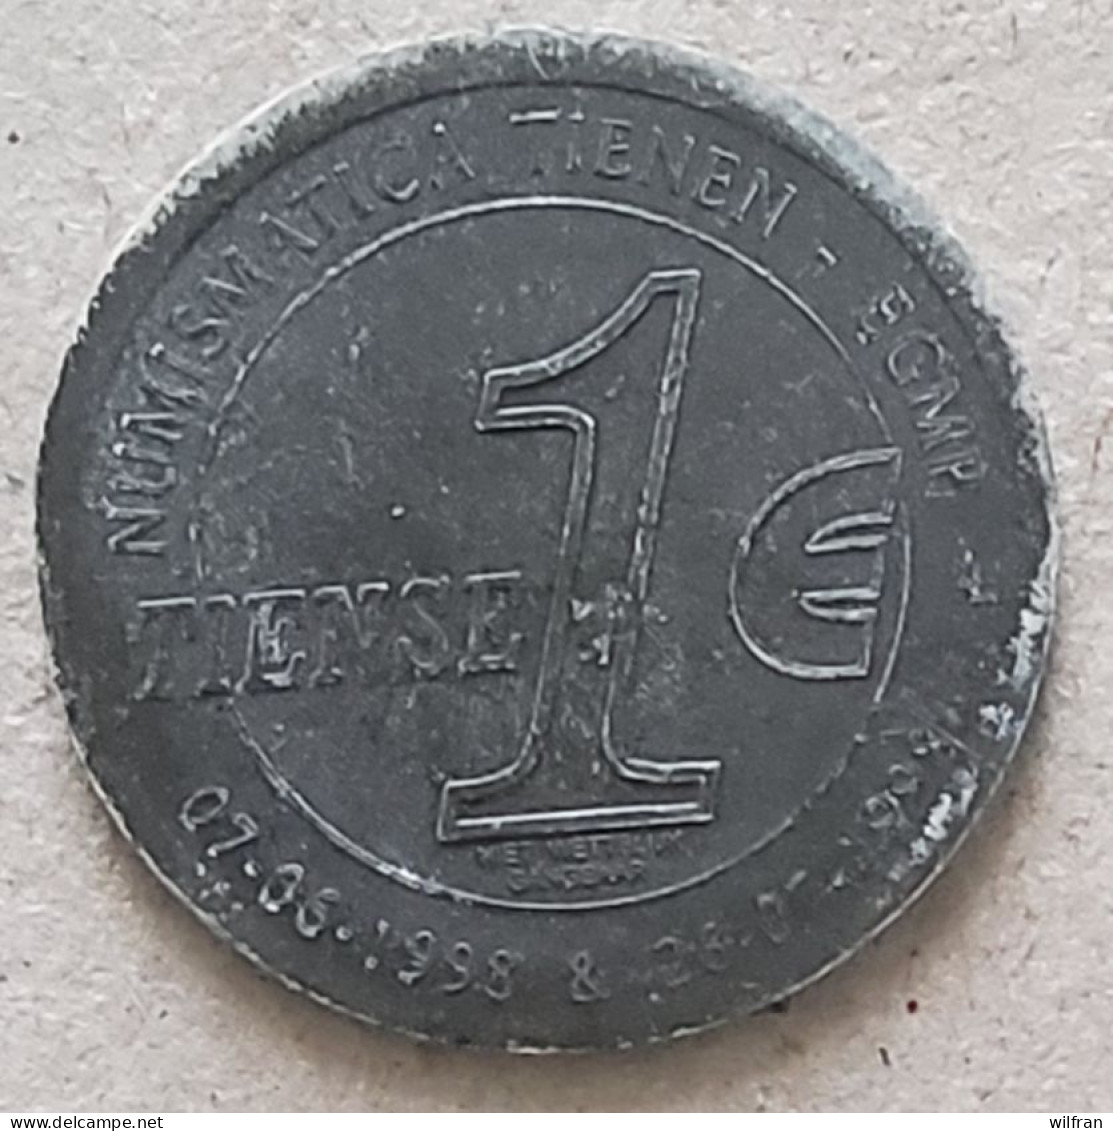 4636 Vz Tentoonstelling Numismatica Tienen EGMP Tiense Euro – Kz Wapenschild Tienen - Tokens Of Communes